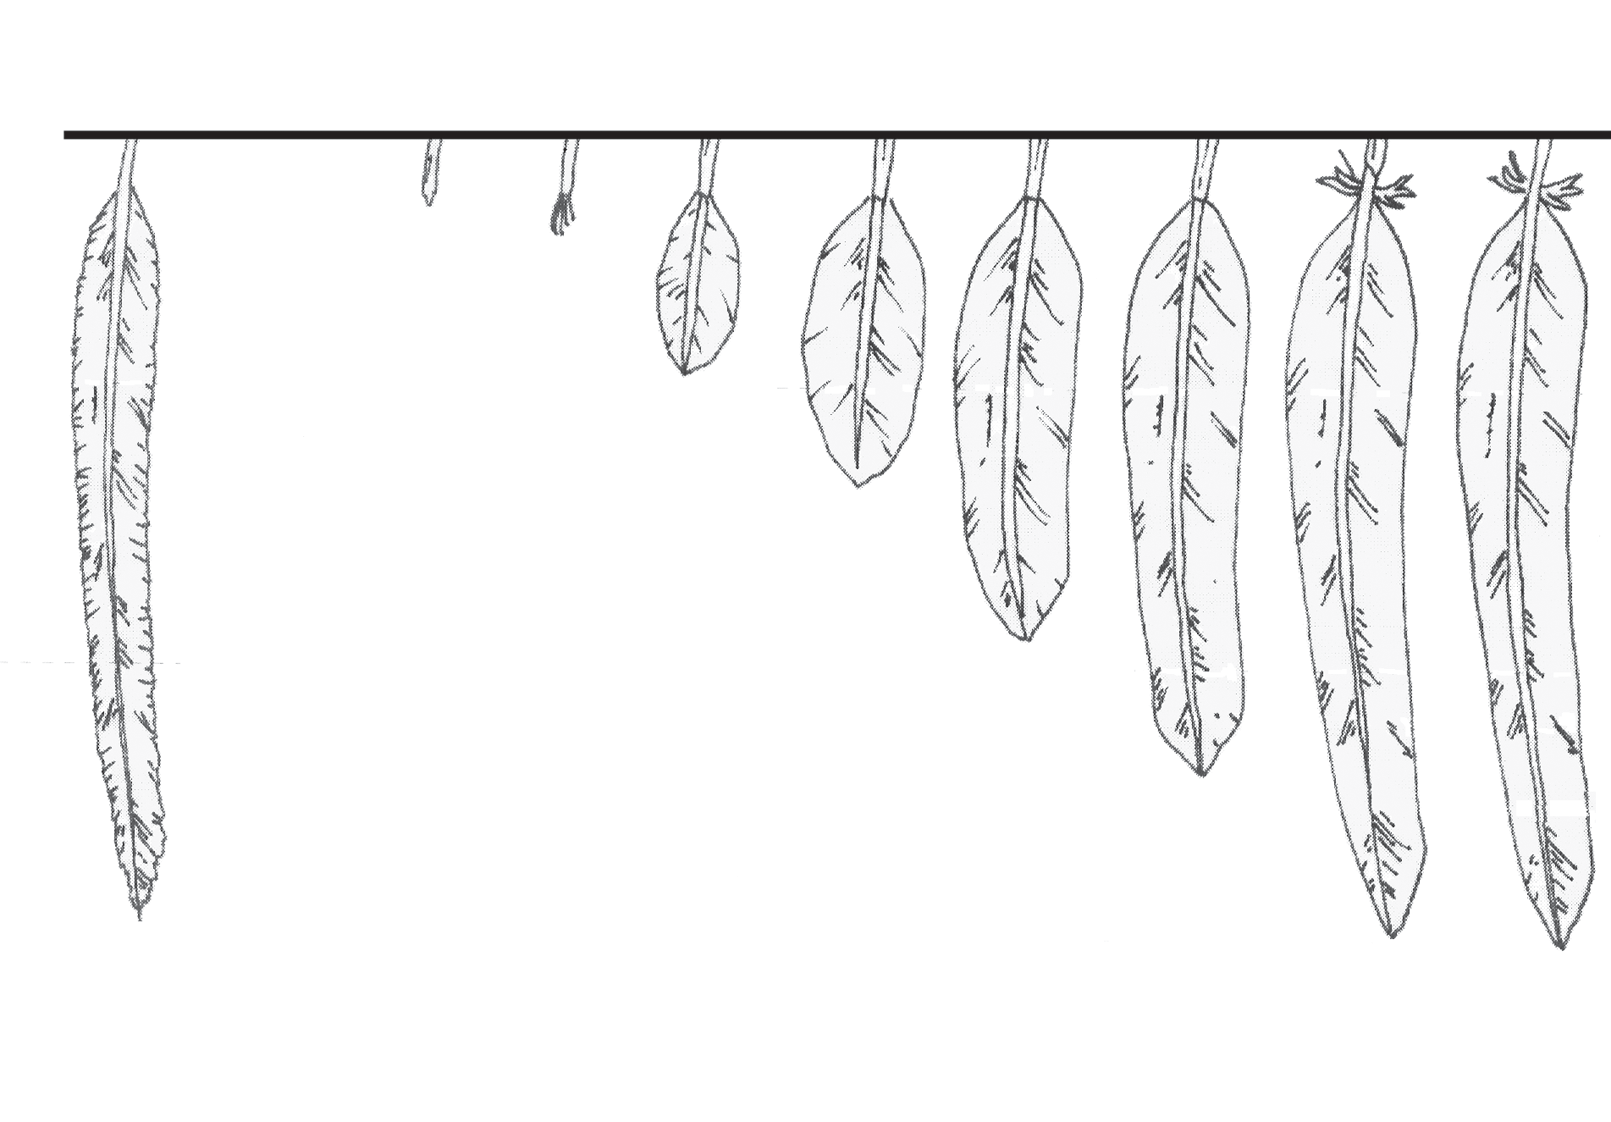 3. Cómo se mide el plumaje? 57 0 1 1 2 2 3 3 4 4 5 Vieja Nueva Fig. 3.4 Codificación utilizada para tomar datos sobre el crecimiento de las diferentes plumas: 0. Pluma todavía vieja; 1.